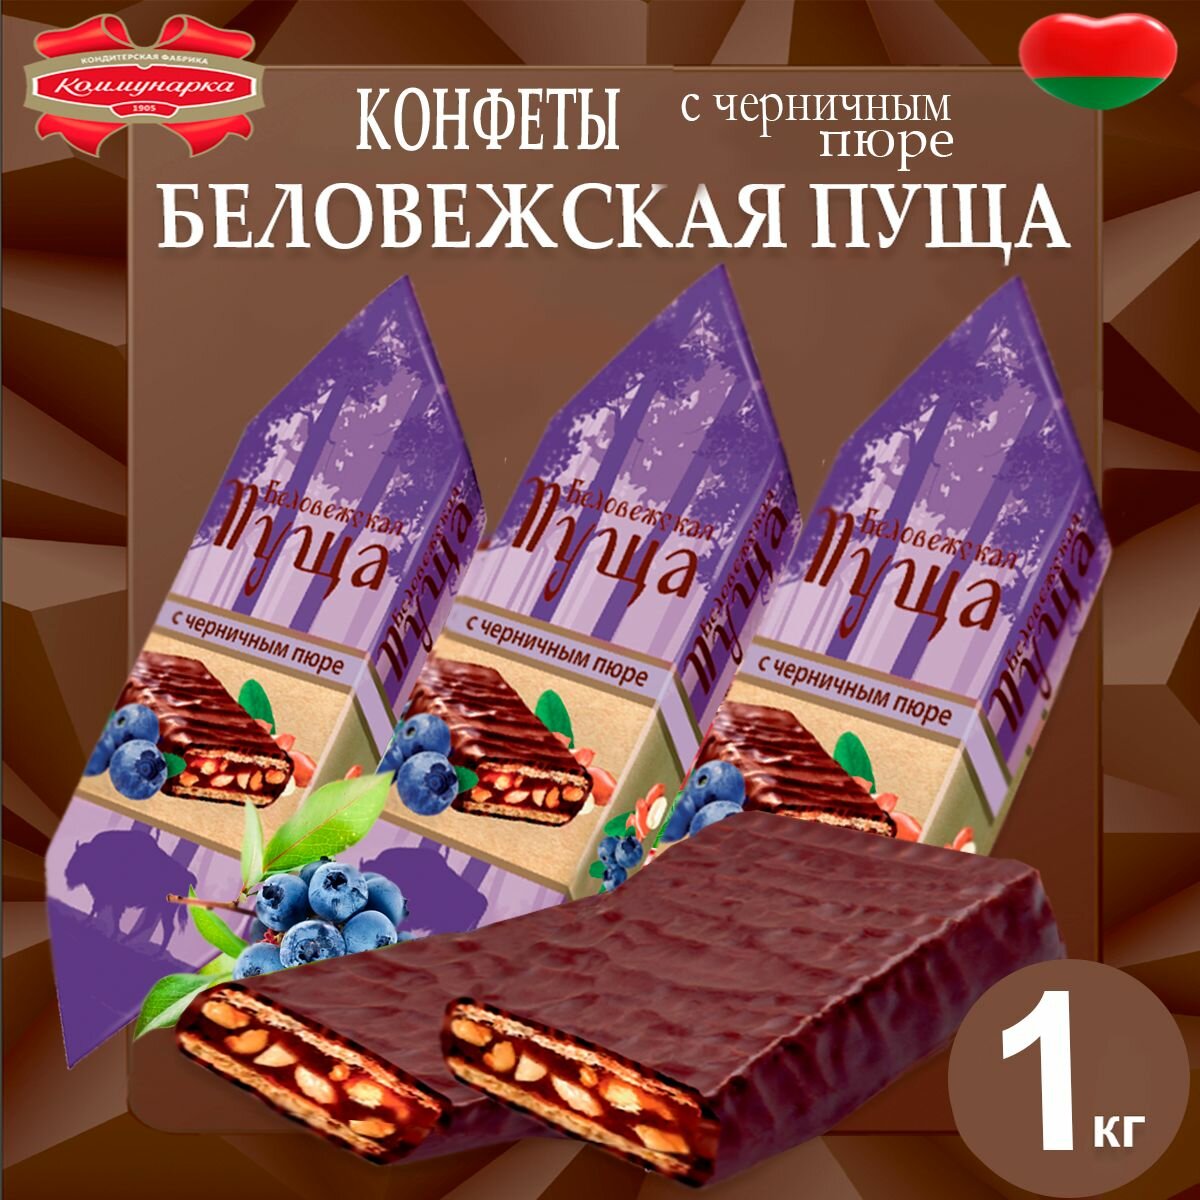 Конфеты Беловежская пуща с черничным пюре 1020гр